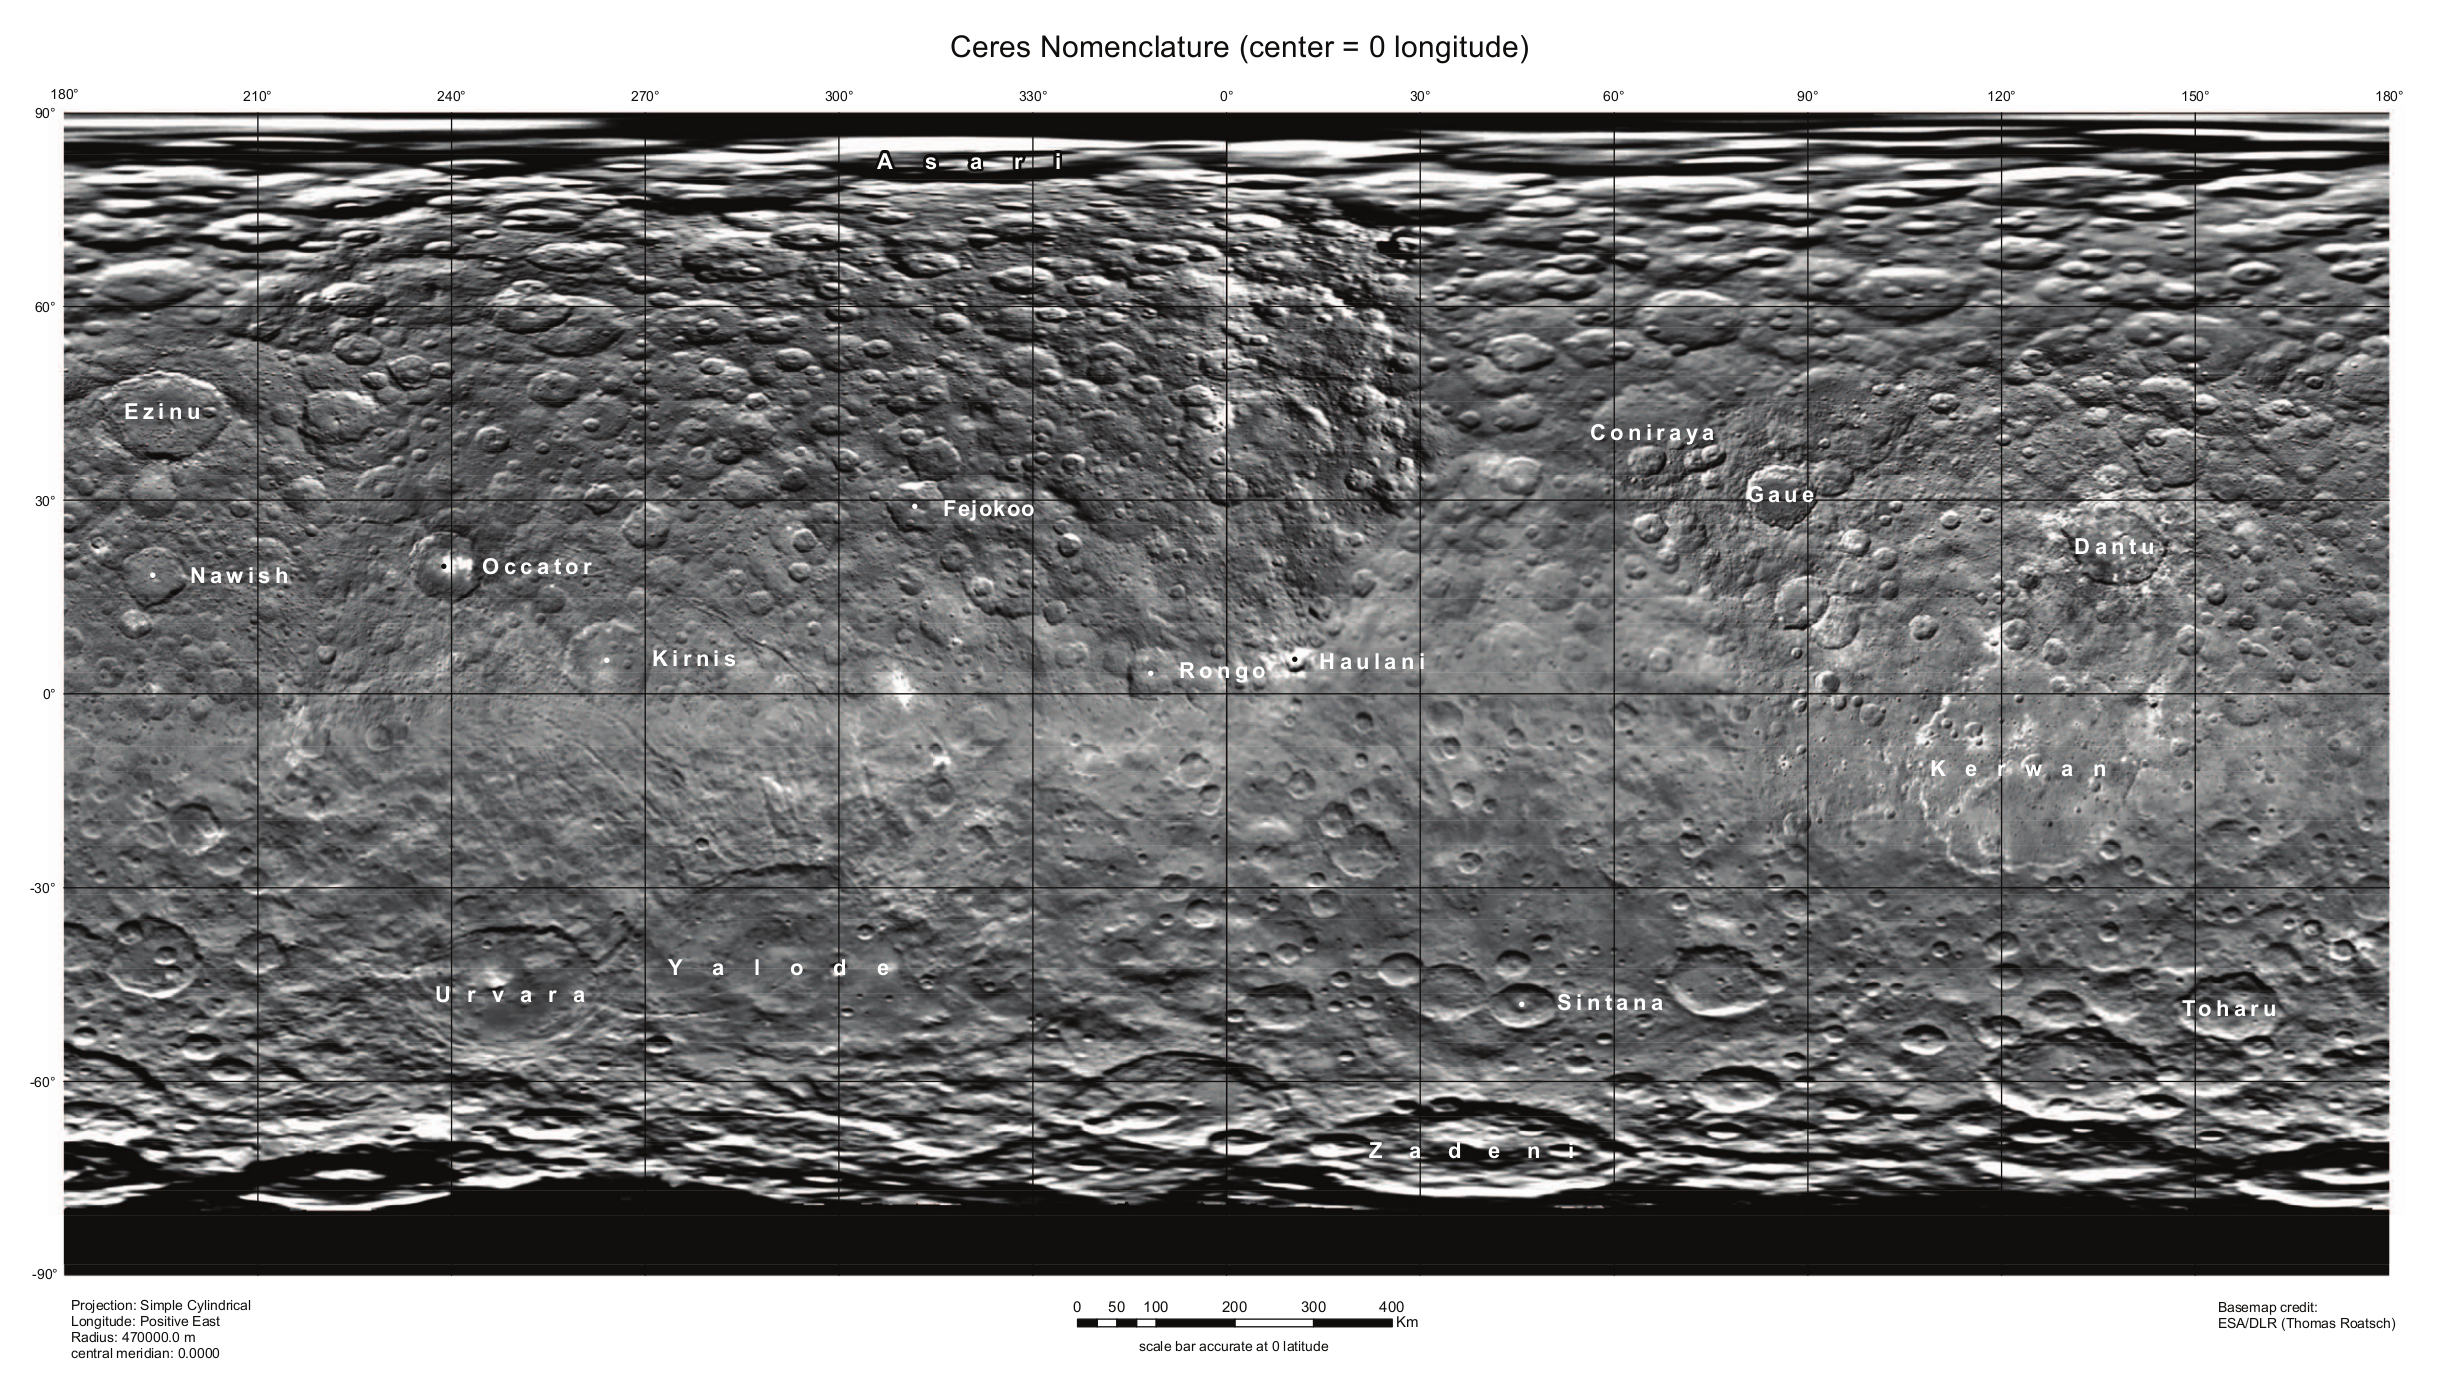 USGS-Ceres-Nomenclature-20150713.jpg